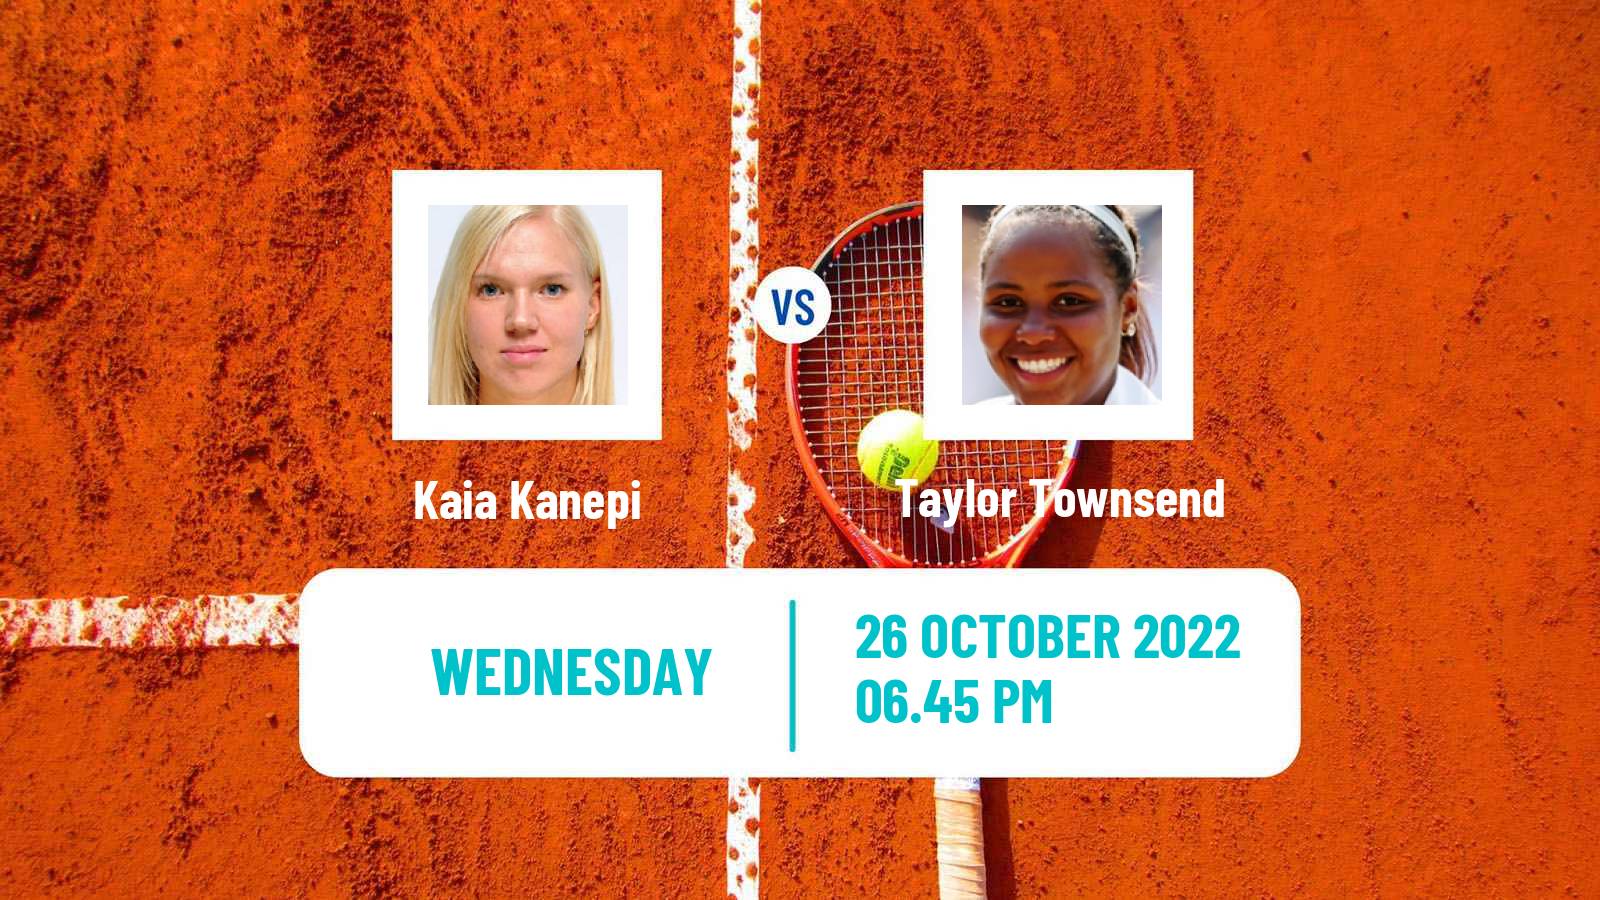 Tennis ITF Tournaments Kaia Kanepi - Taylor Townsend